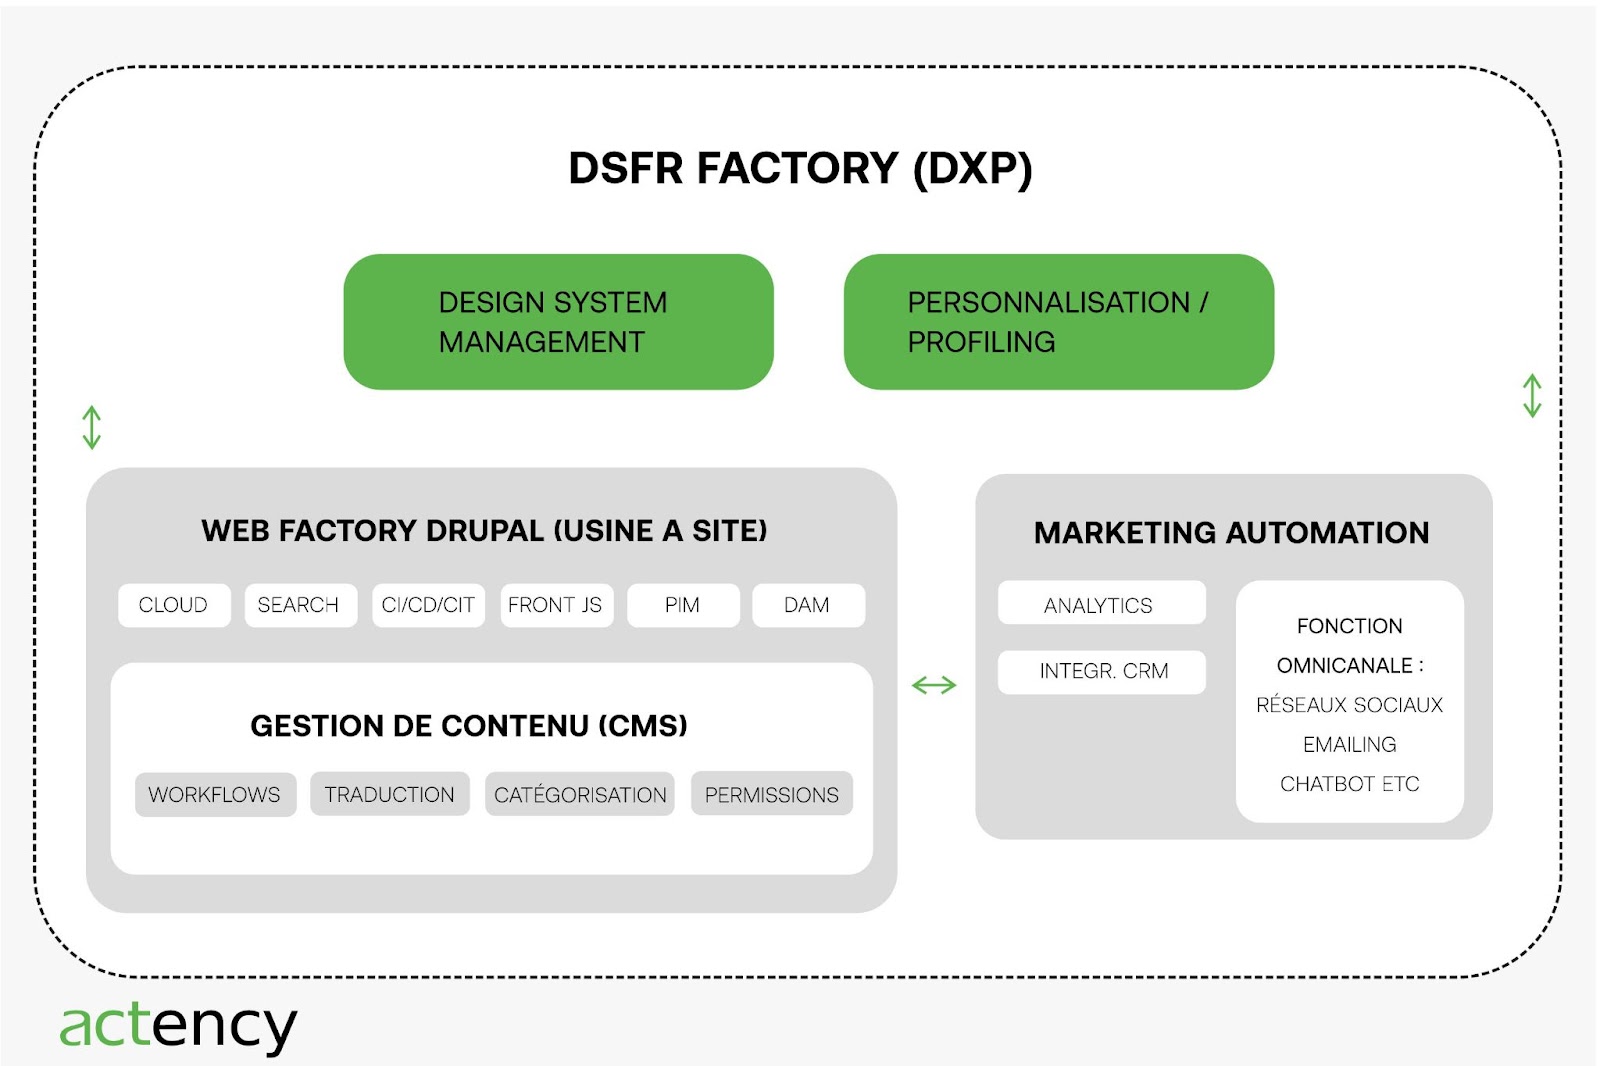 Actency-Offre-DSFR_Factory-DXP